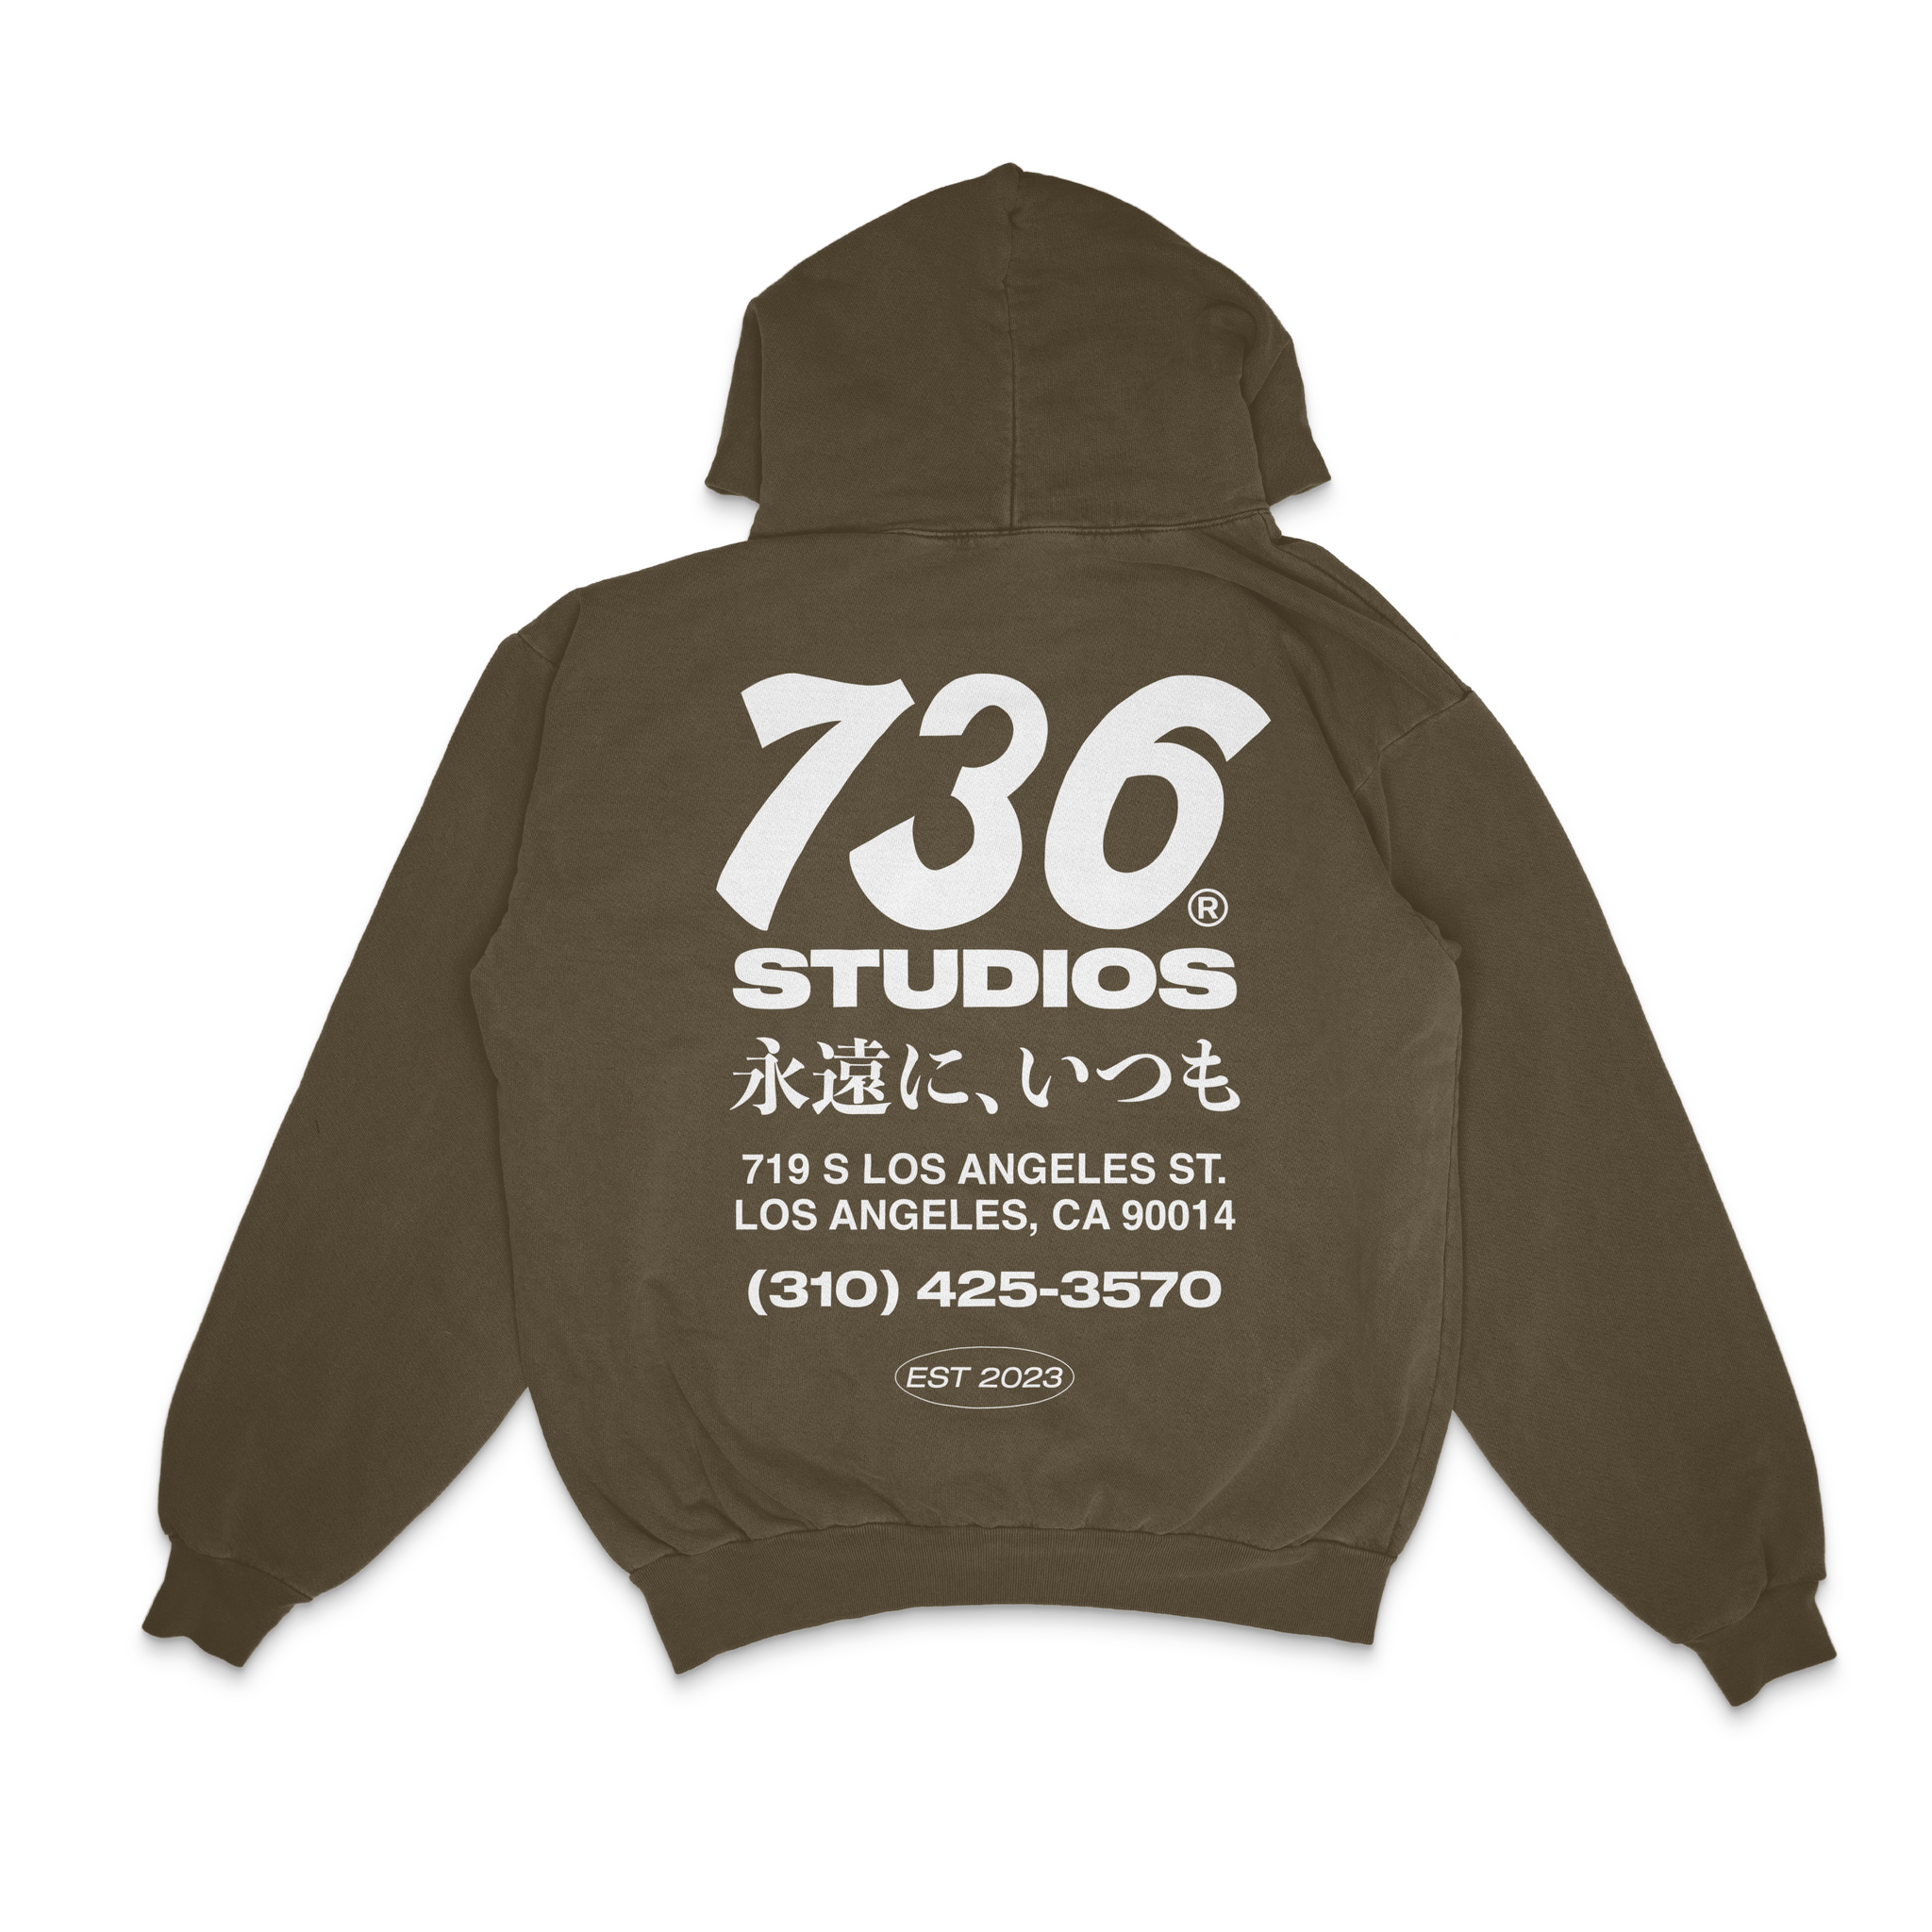 Garment Dyed Hoodie - Vintage Brown – 736 STUDIOS